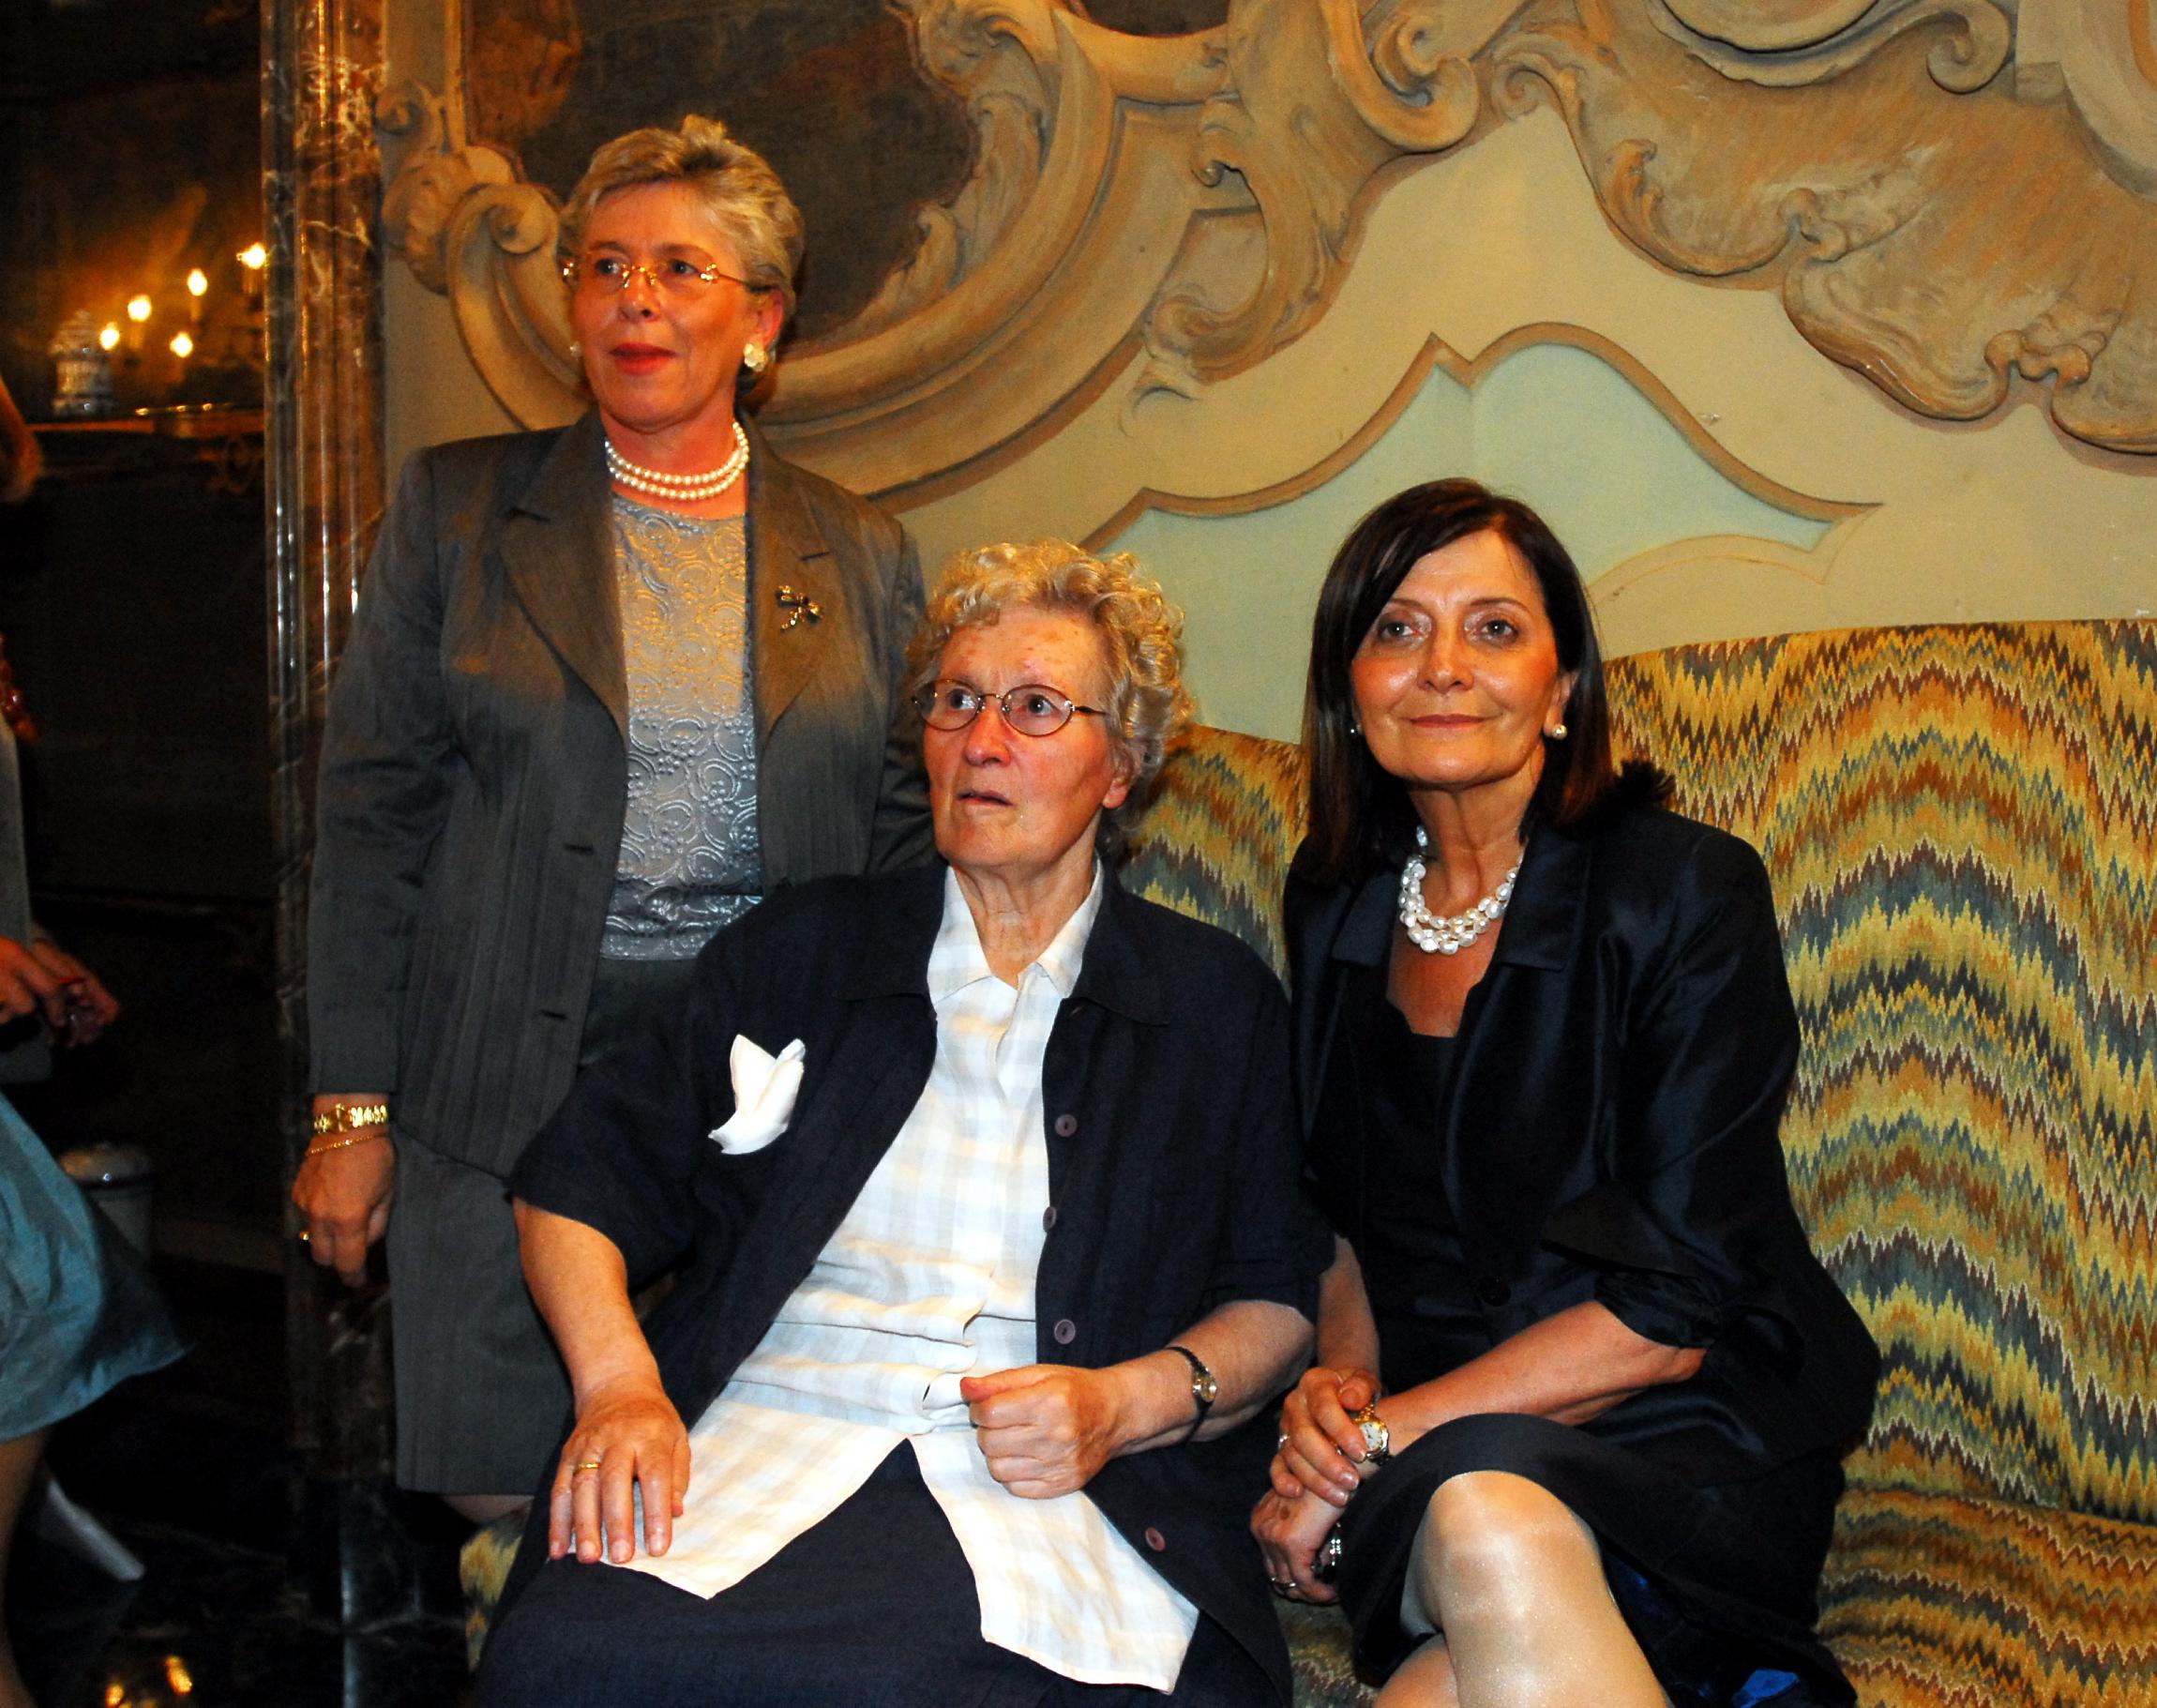 Presentazione del libro di Tina Anselmi "Storia di una passione politica". Da sinistra Maria Pia Garavaglia, Tina Anselmi e Patrizia Toia (Fotogramma)